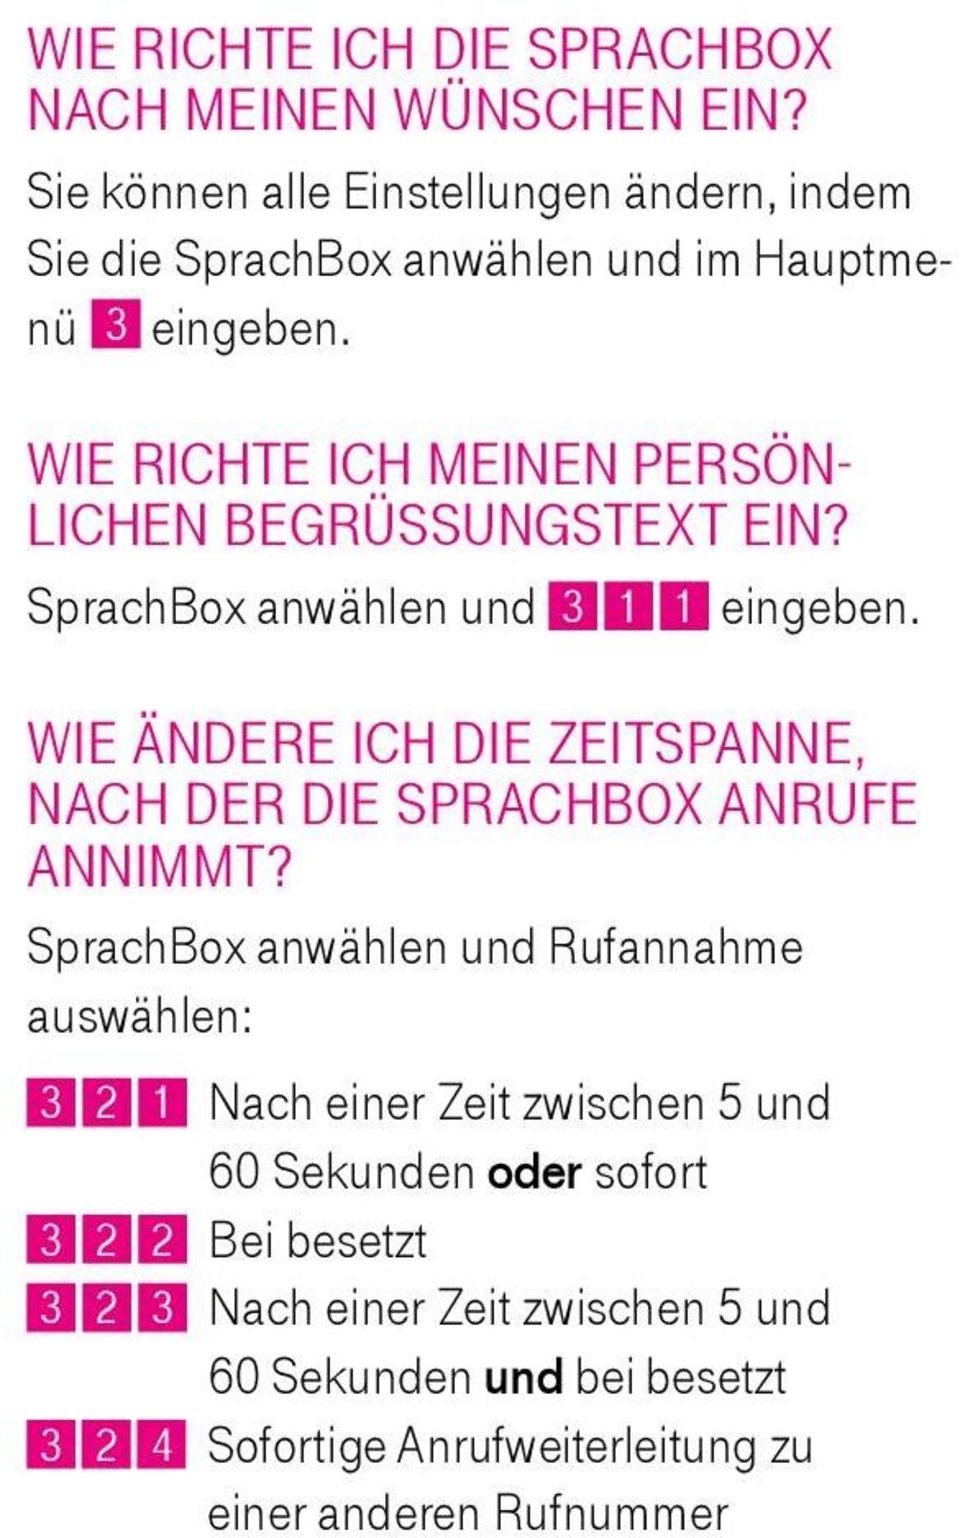 Wie richte ich meinen persönlichen Begrüssungstext ein? SprachBox anwählen und 3 1 1 eingeben.